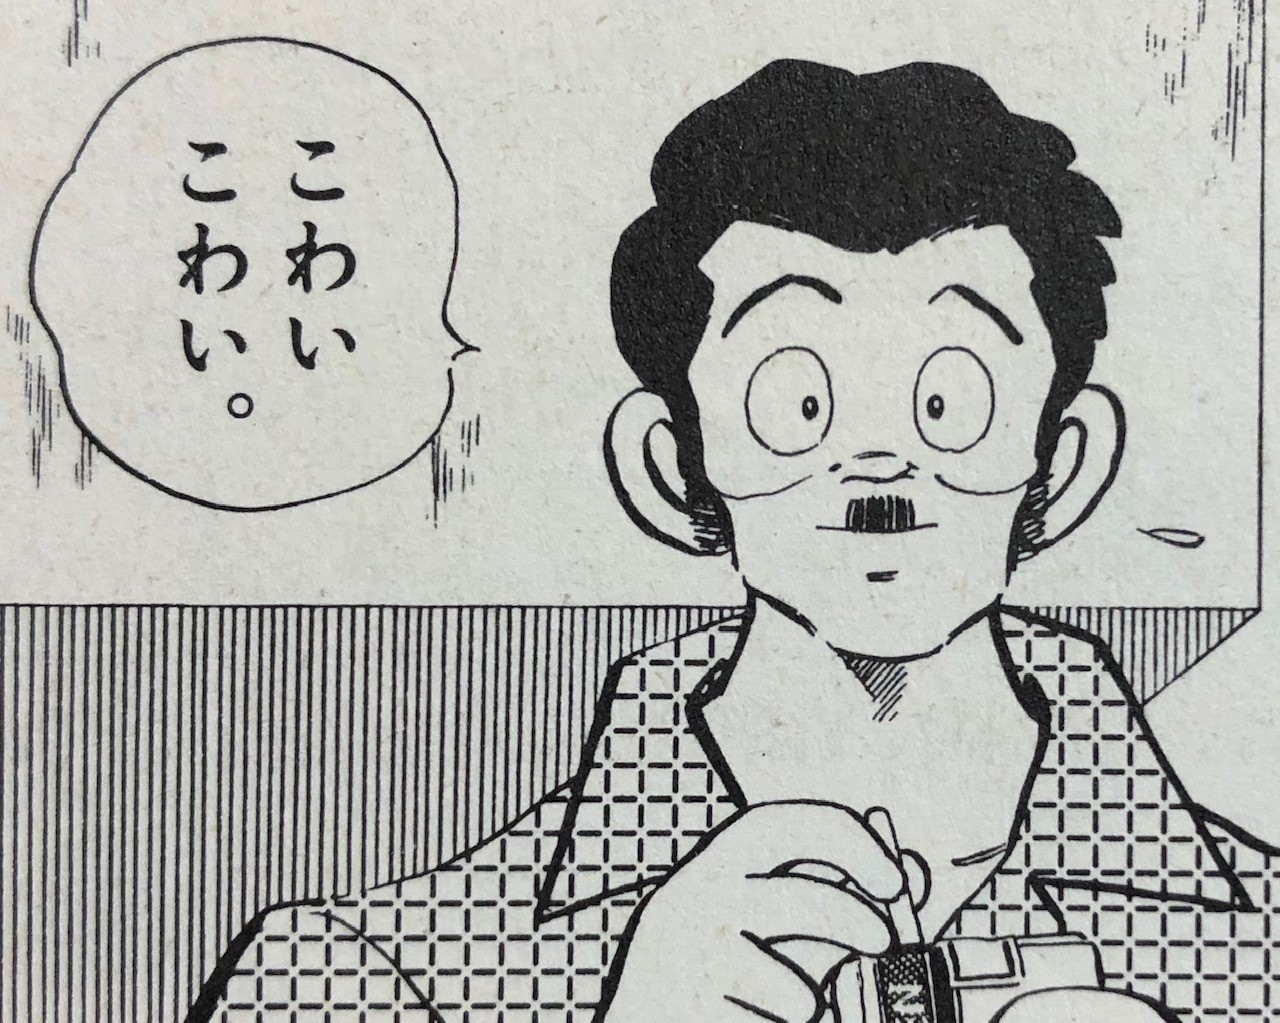 タッチ アニメ 漫画 のネタバレ解説 考察まとめ 3 8 Renote リノート